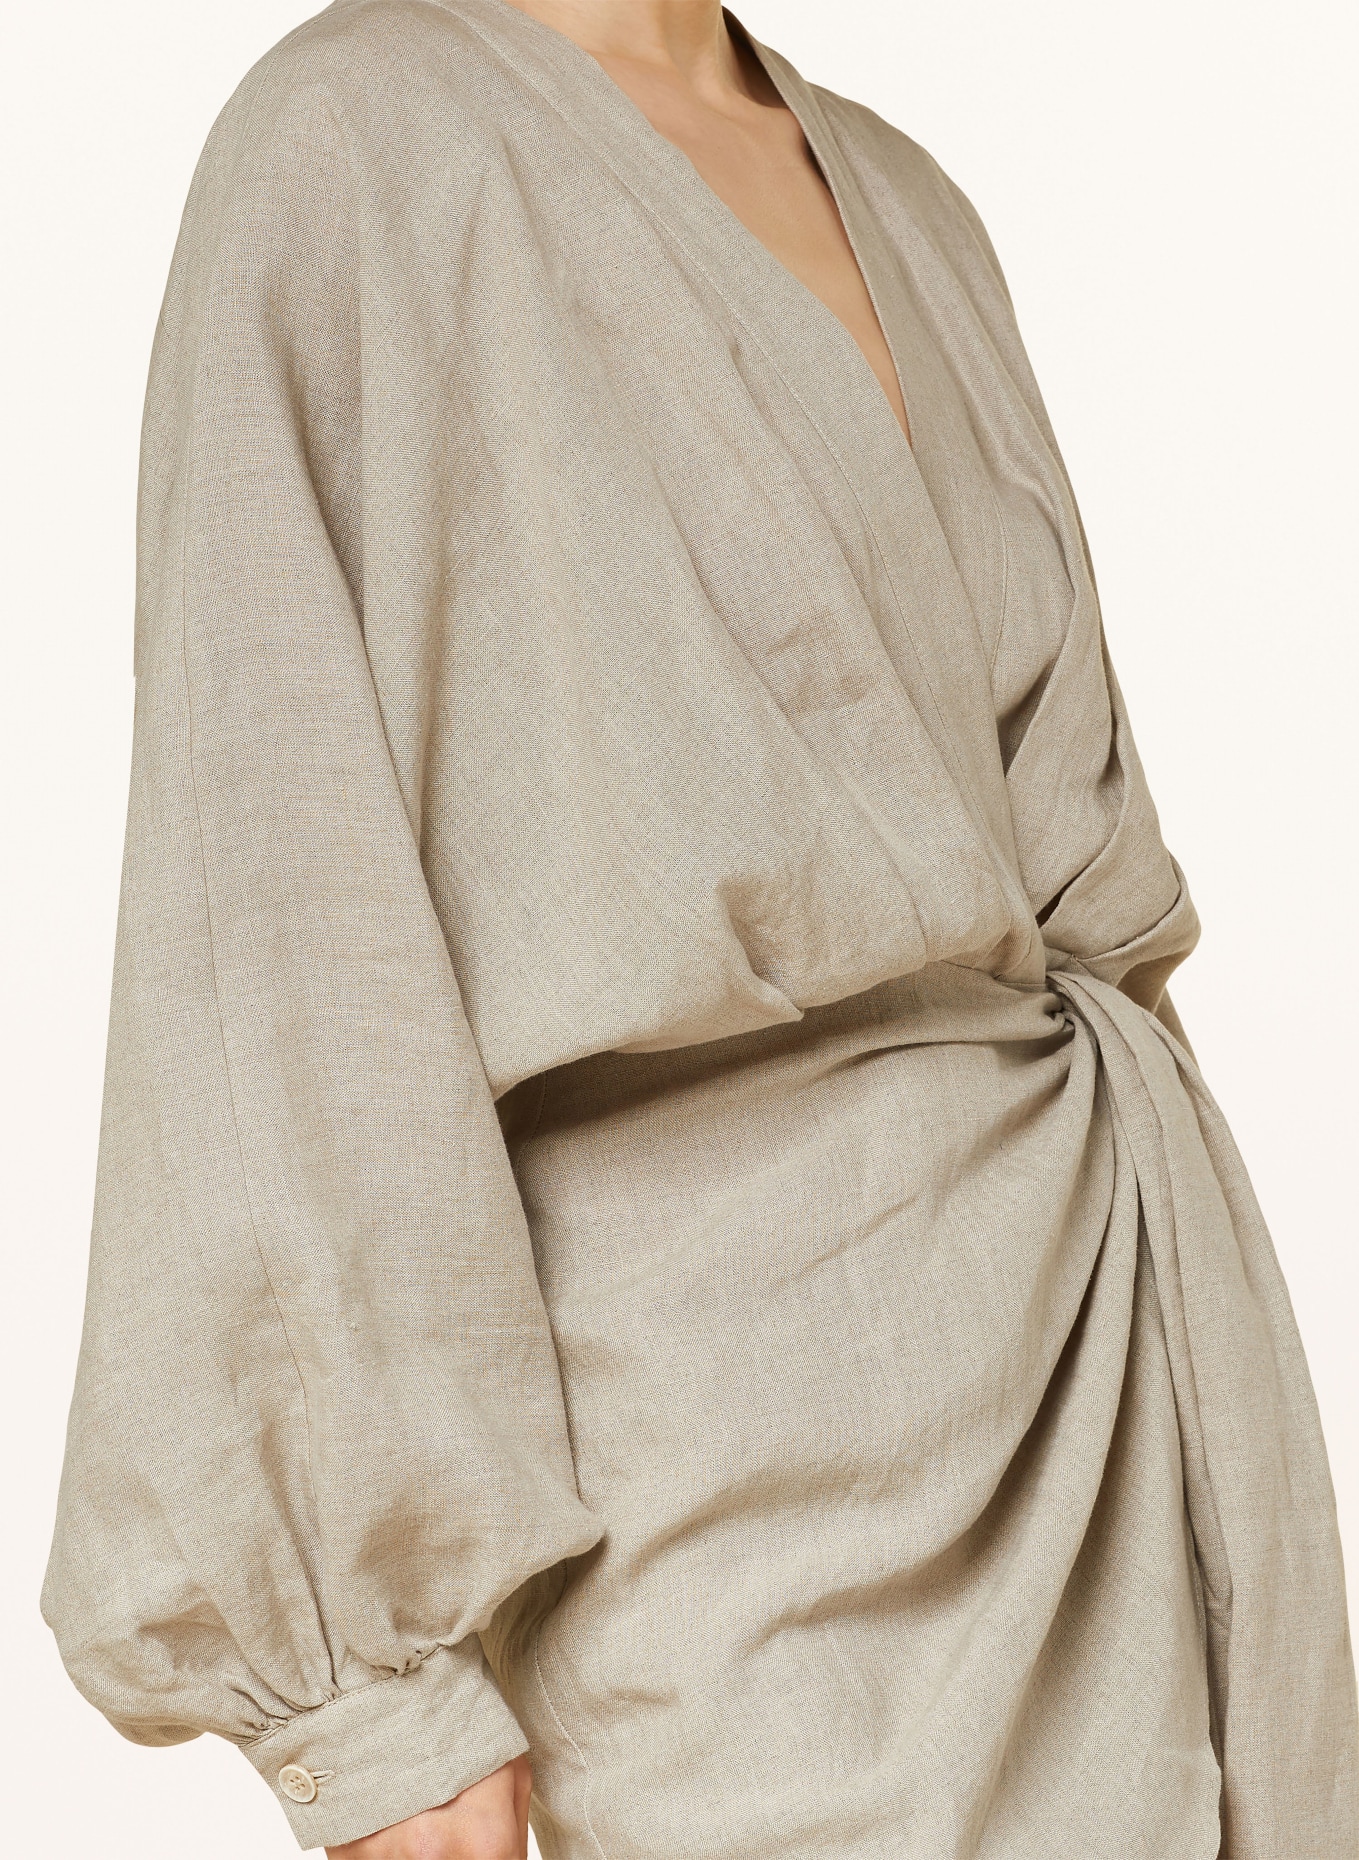 JUNE FRIDAYS Wrap dress made of linen, Color: BEIGE (Image 4)